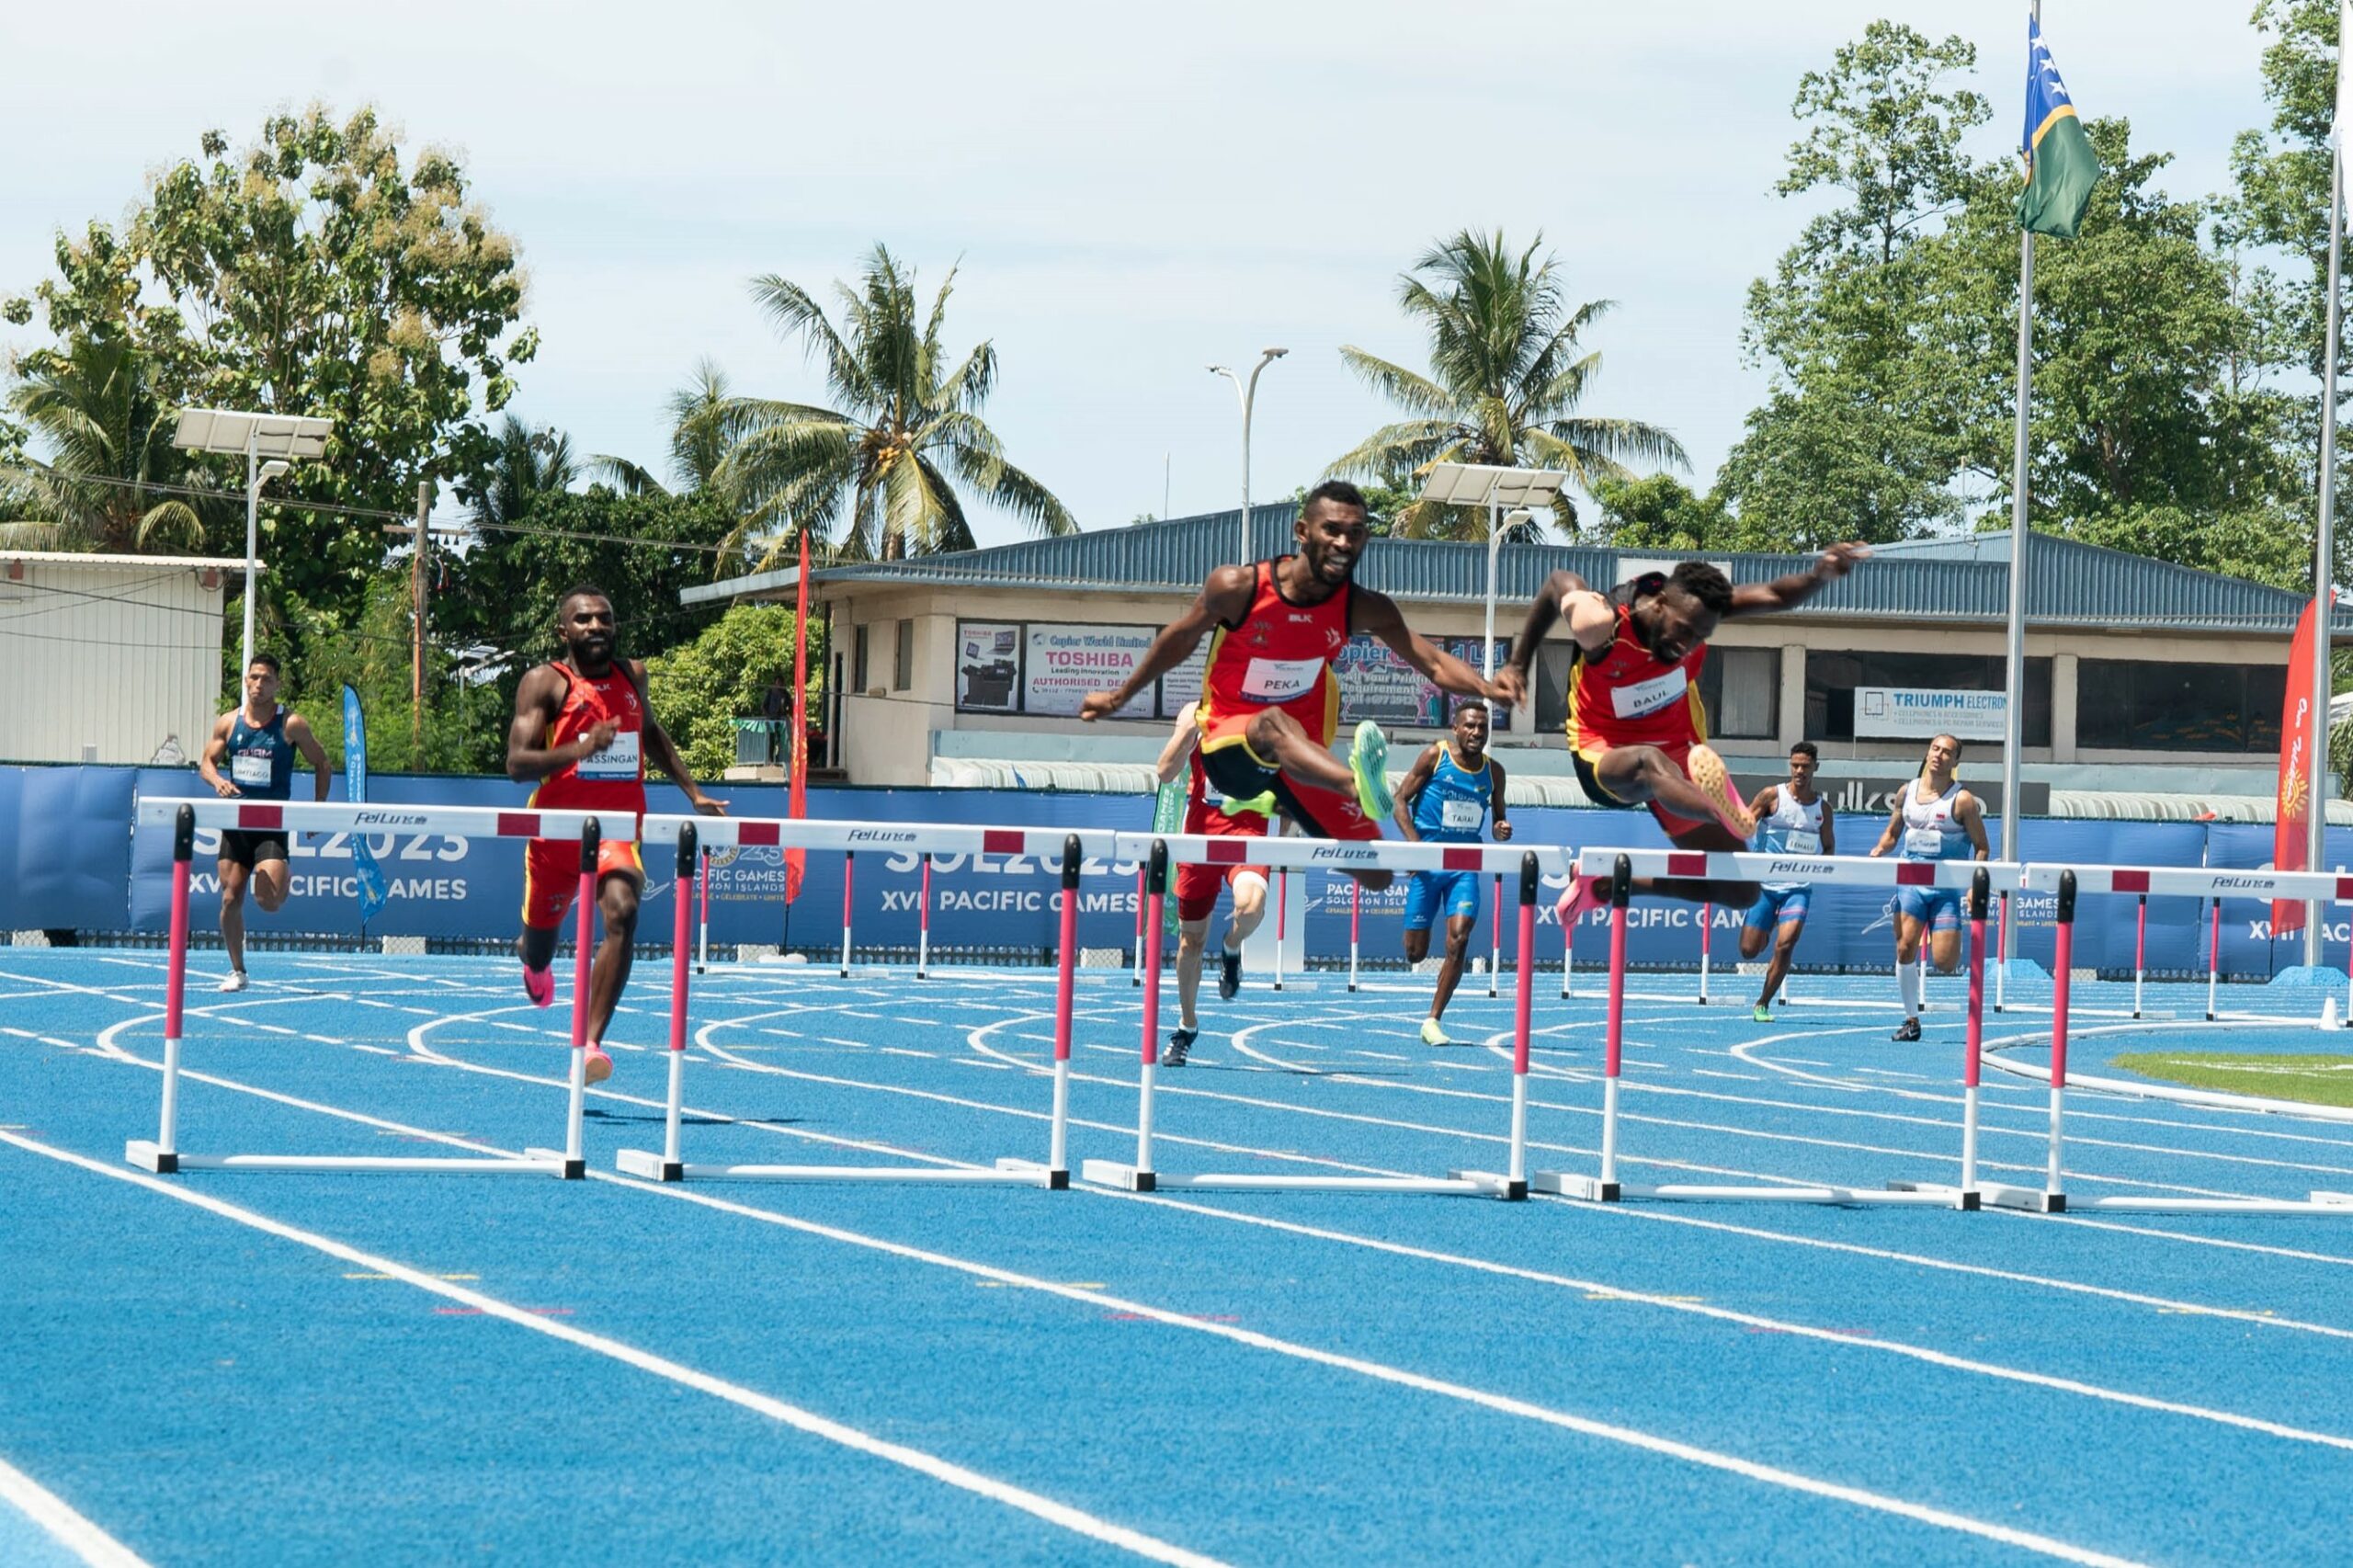 Men running a hurdles race